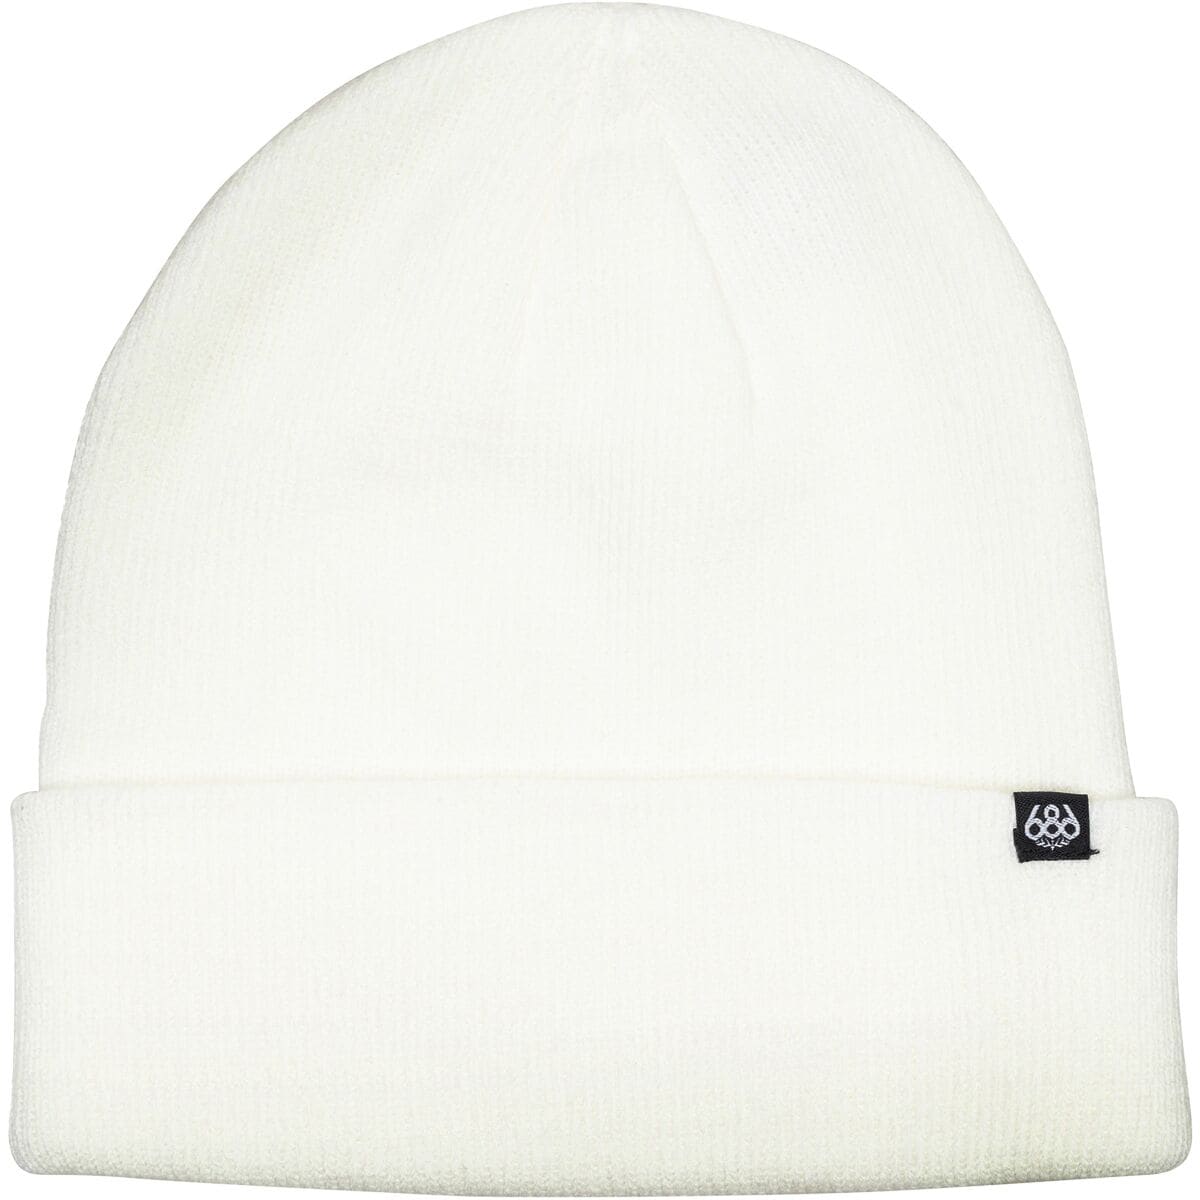 Стандартная шапка-бини 686, белый